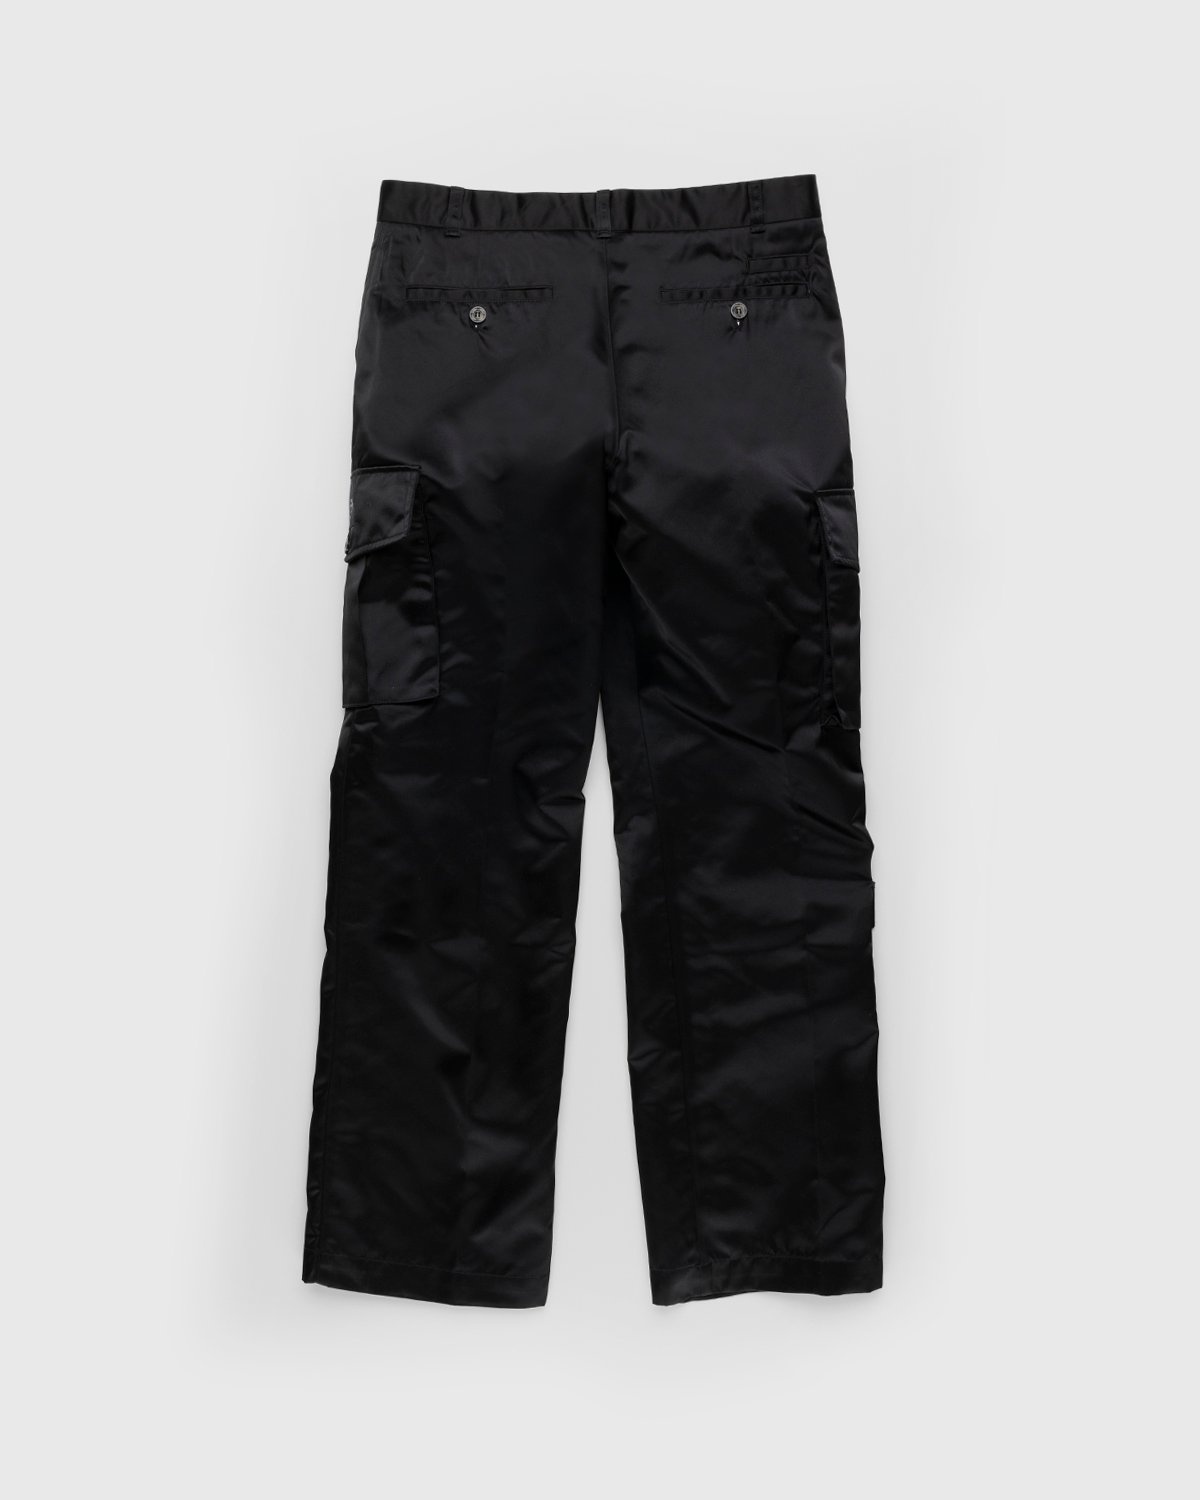 Phipps – Uniform Dad Pant Black - Cargo Pants - Black - Image 2